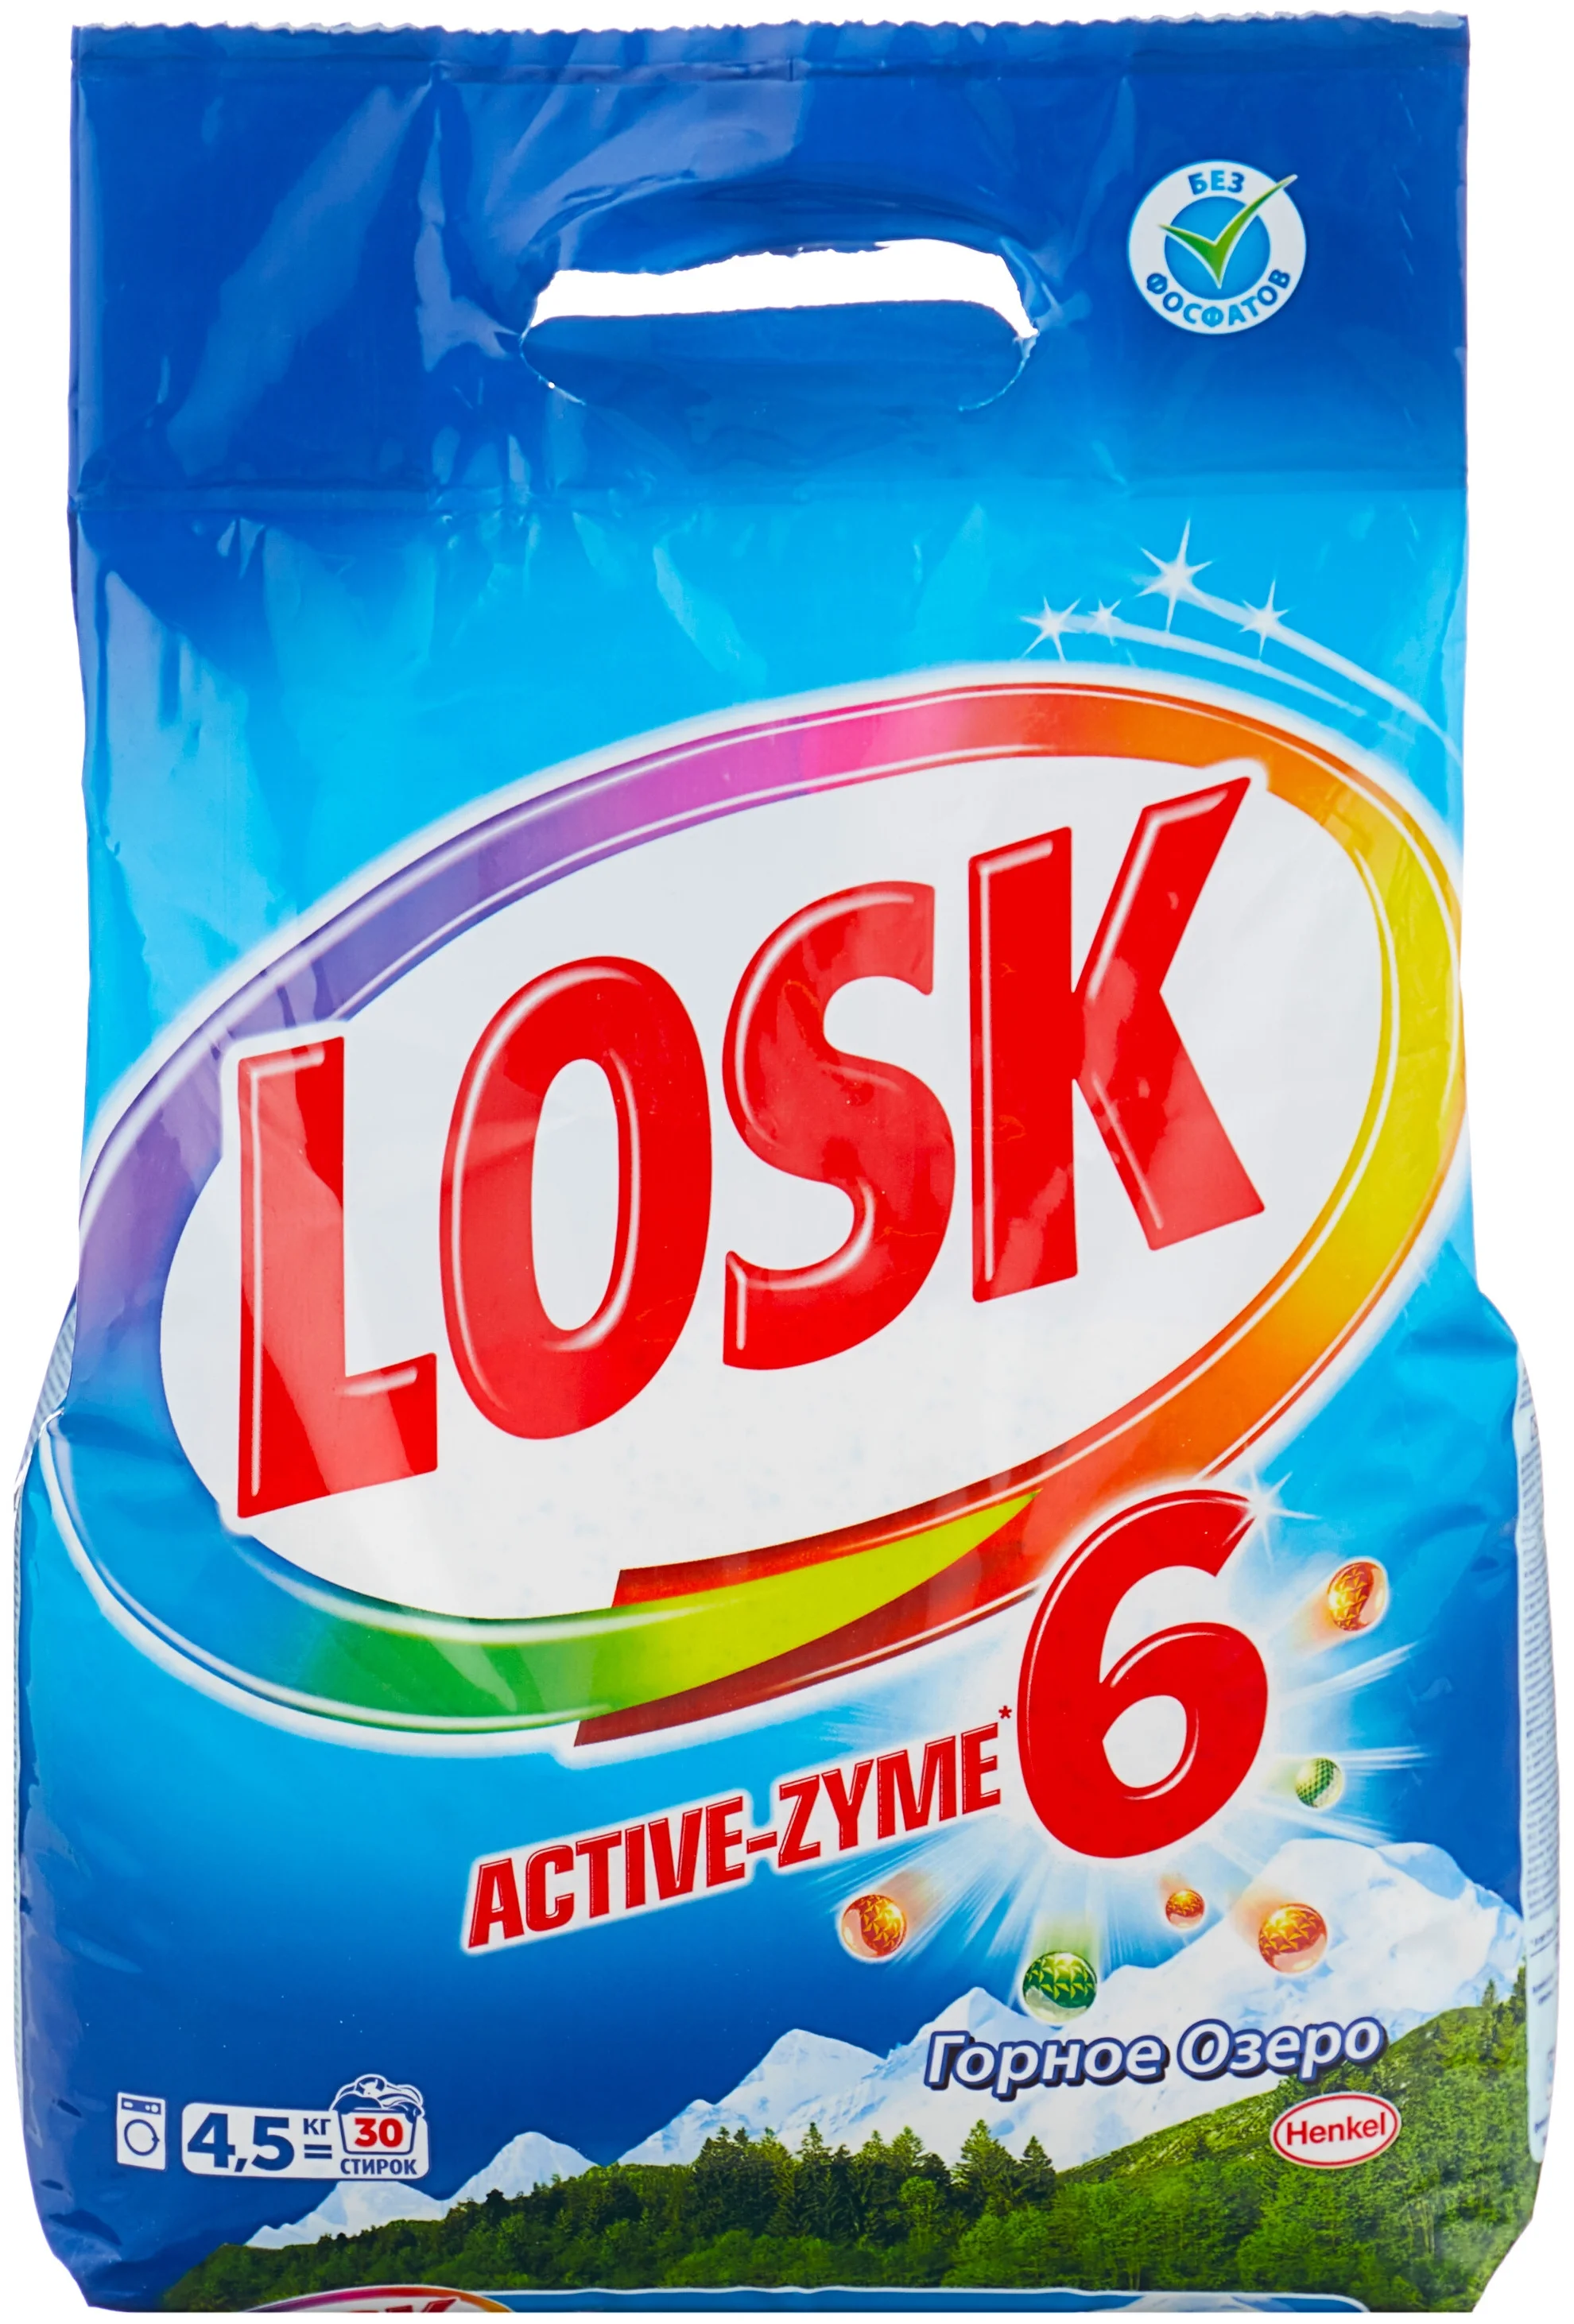 Losk "Горное озеро" - назначение: для хлопковых тканей, для синтетических тканей, для белых и светлых тканей